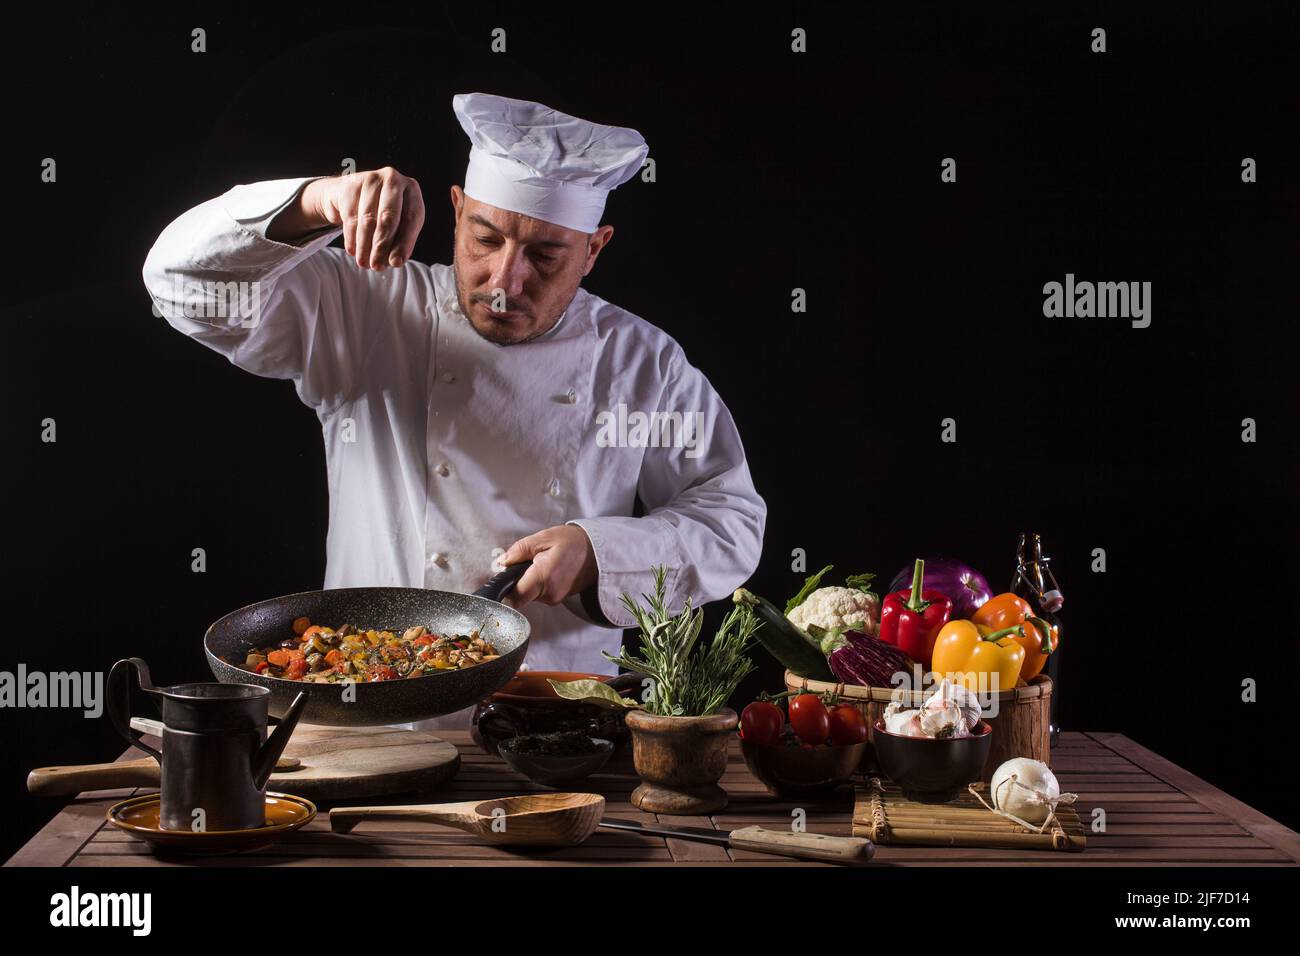 Chef masculino con uniforme blanco y sombrero poniendo sal y hierbas en el plato de comida con verduras antes de servir mientras trabaja en la cocina de un restaurante Foto de stock